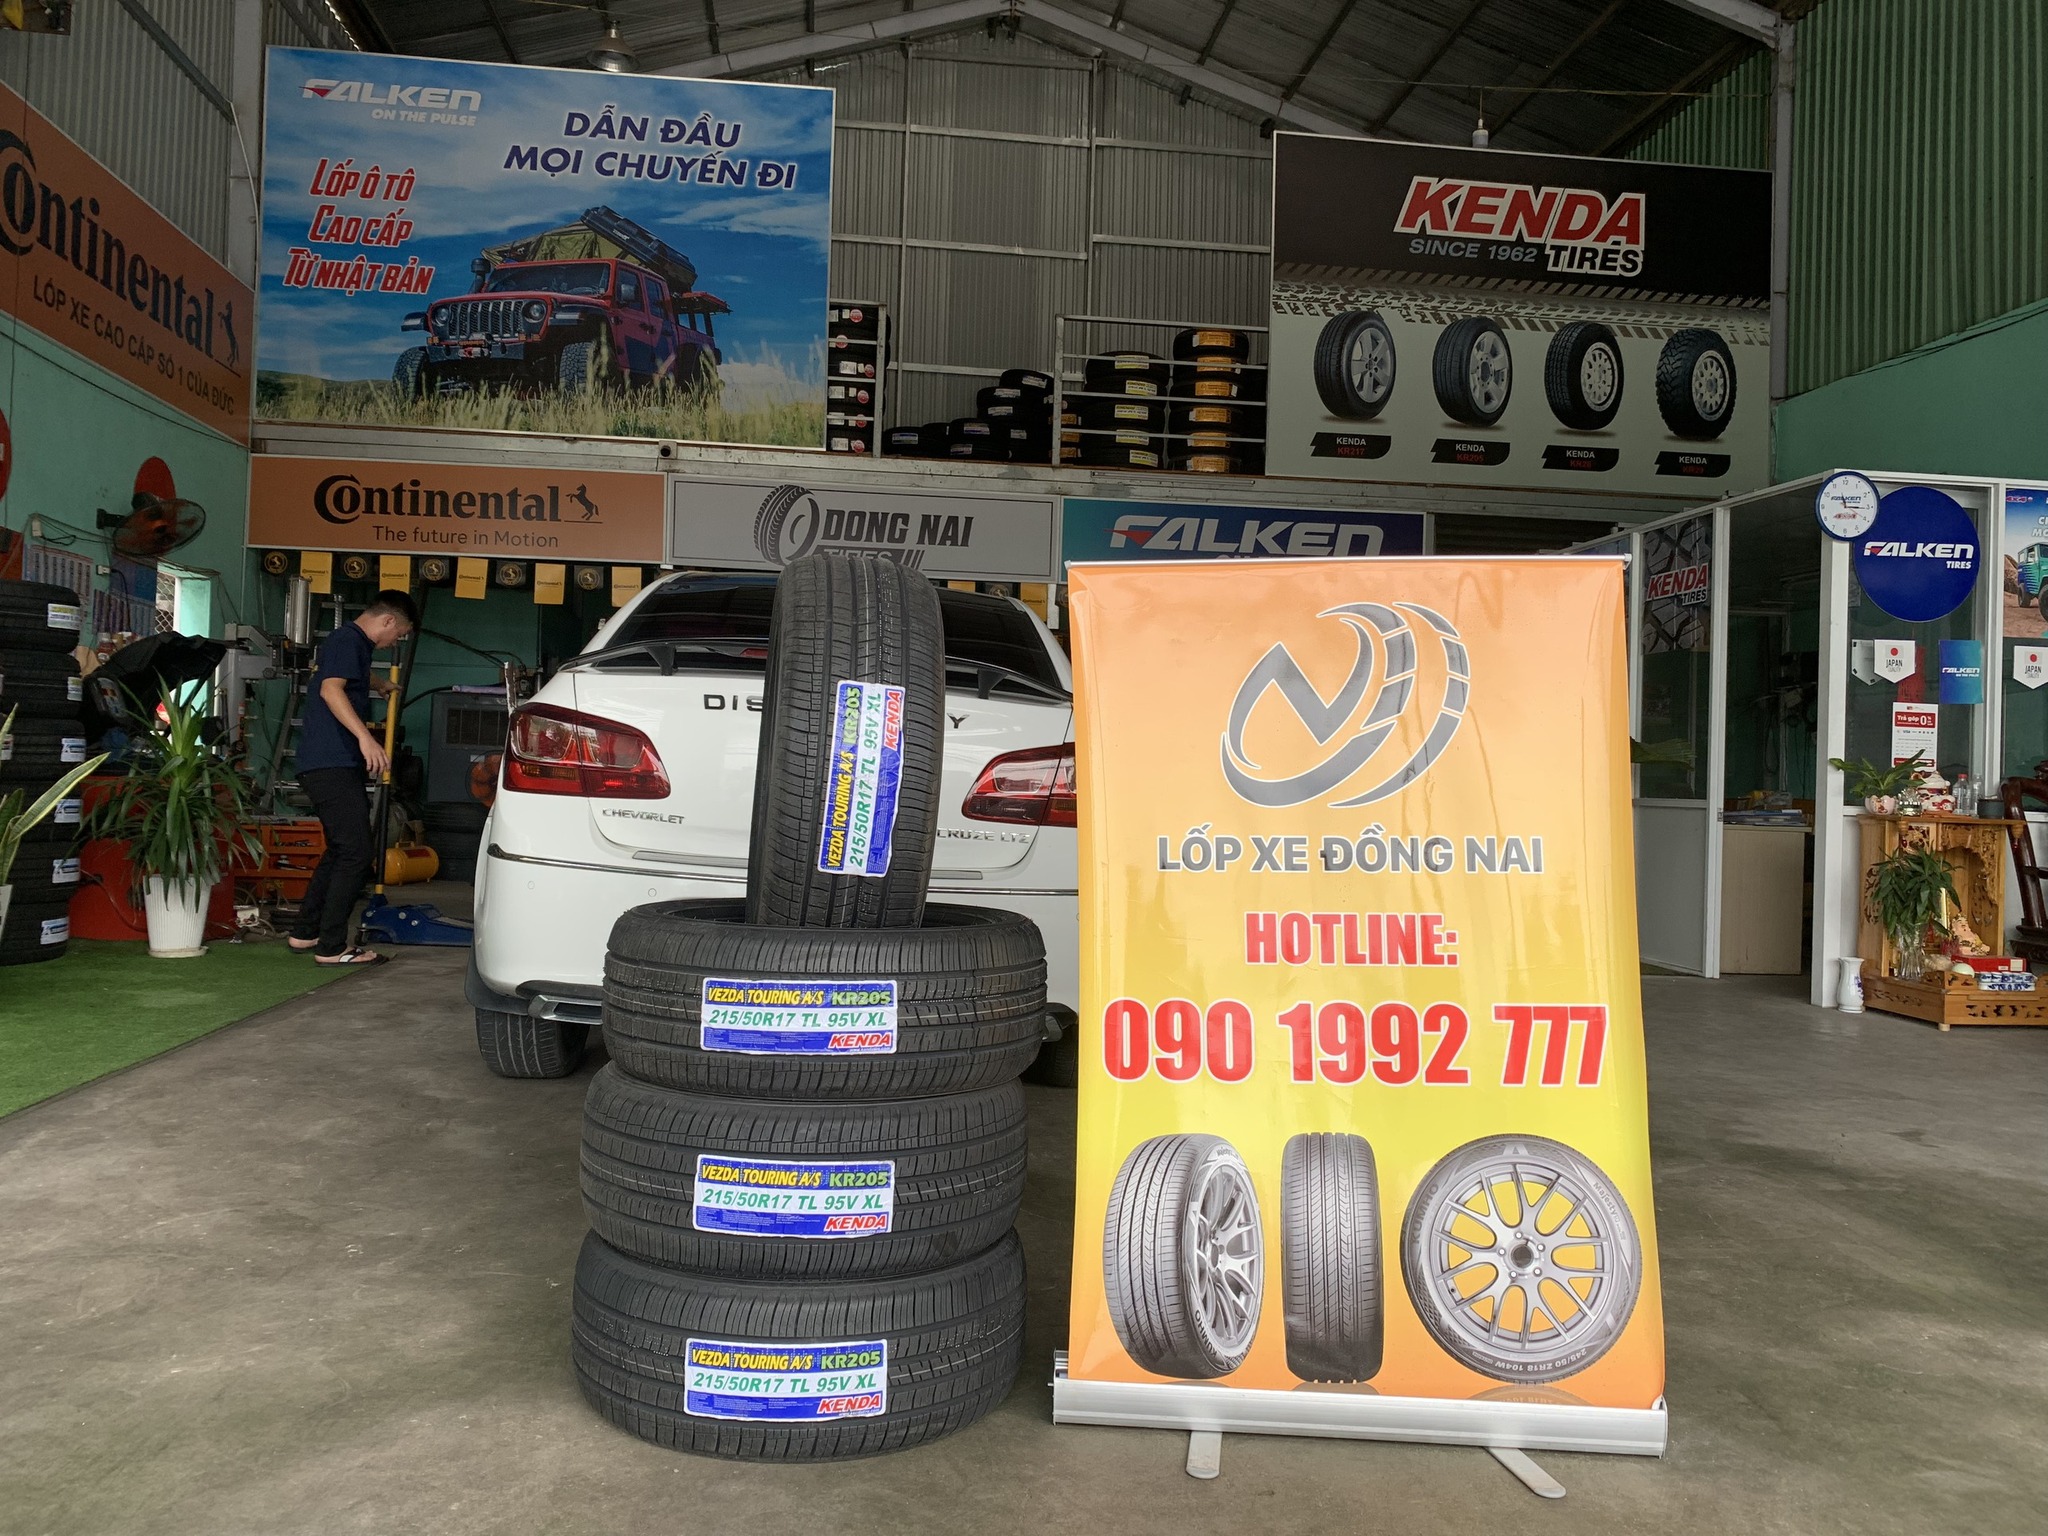 TƯ VẤN : Thay lốp xe Chevrolet Cruze ở Quận 9, TP. Hồ Chí Minh.